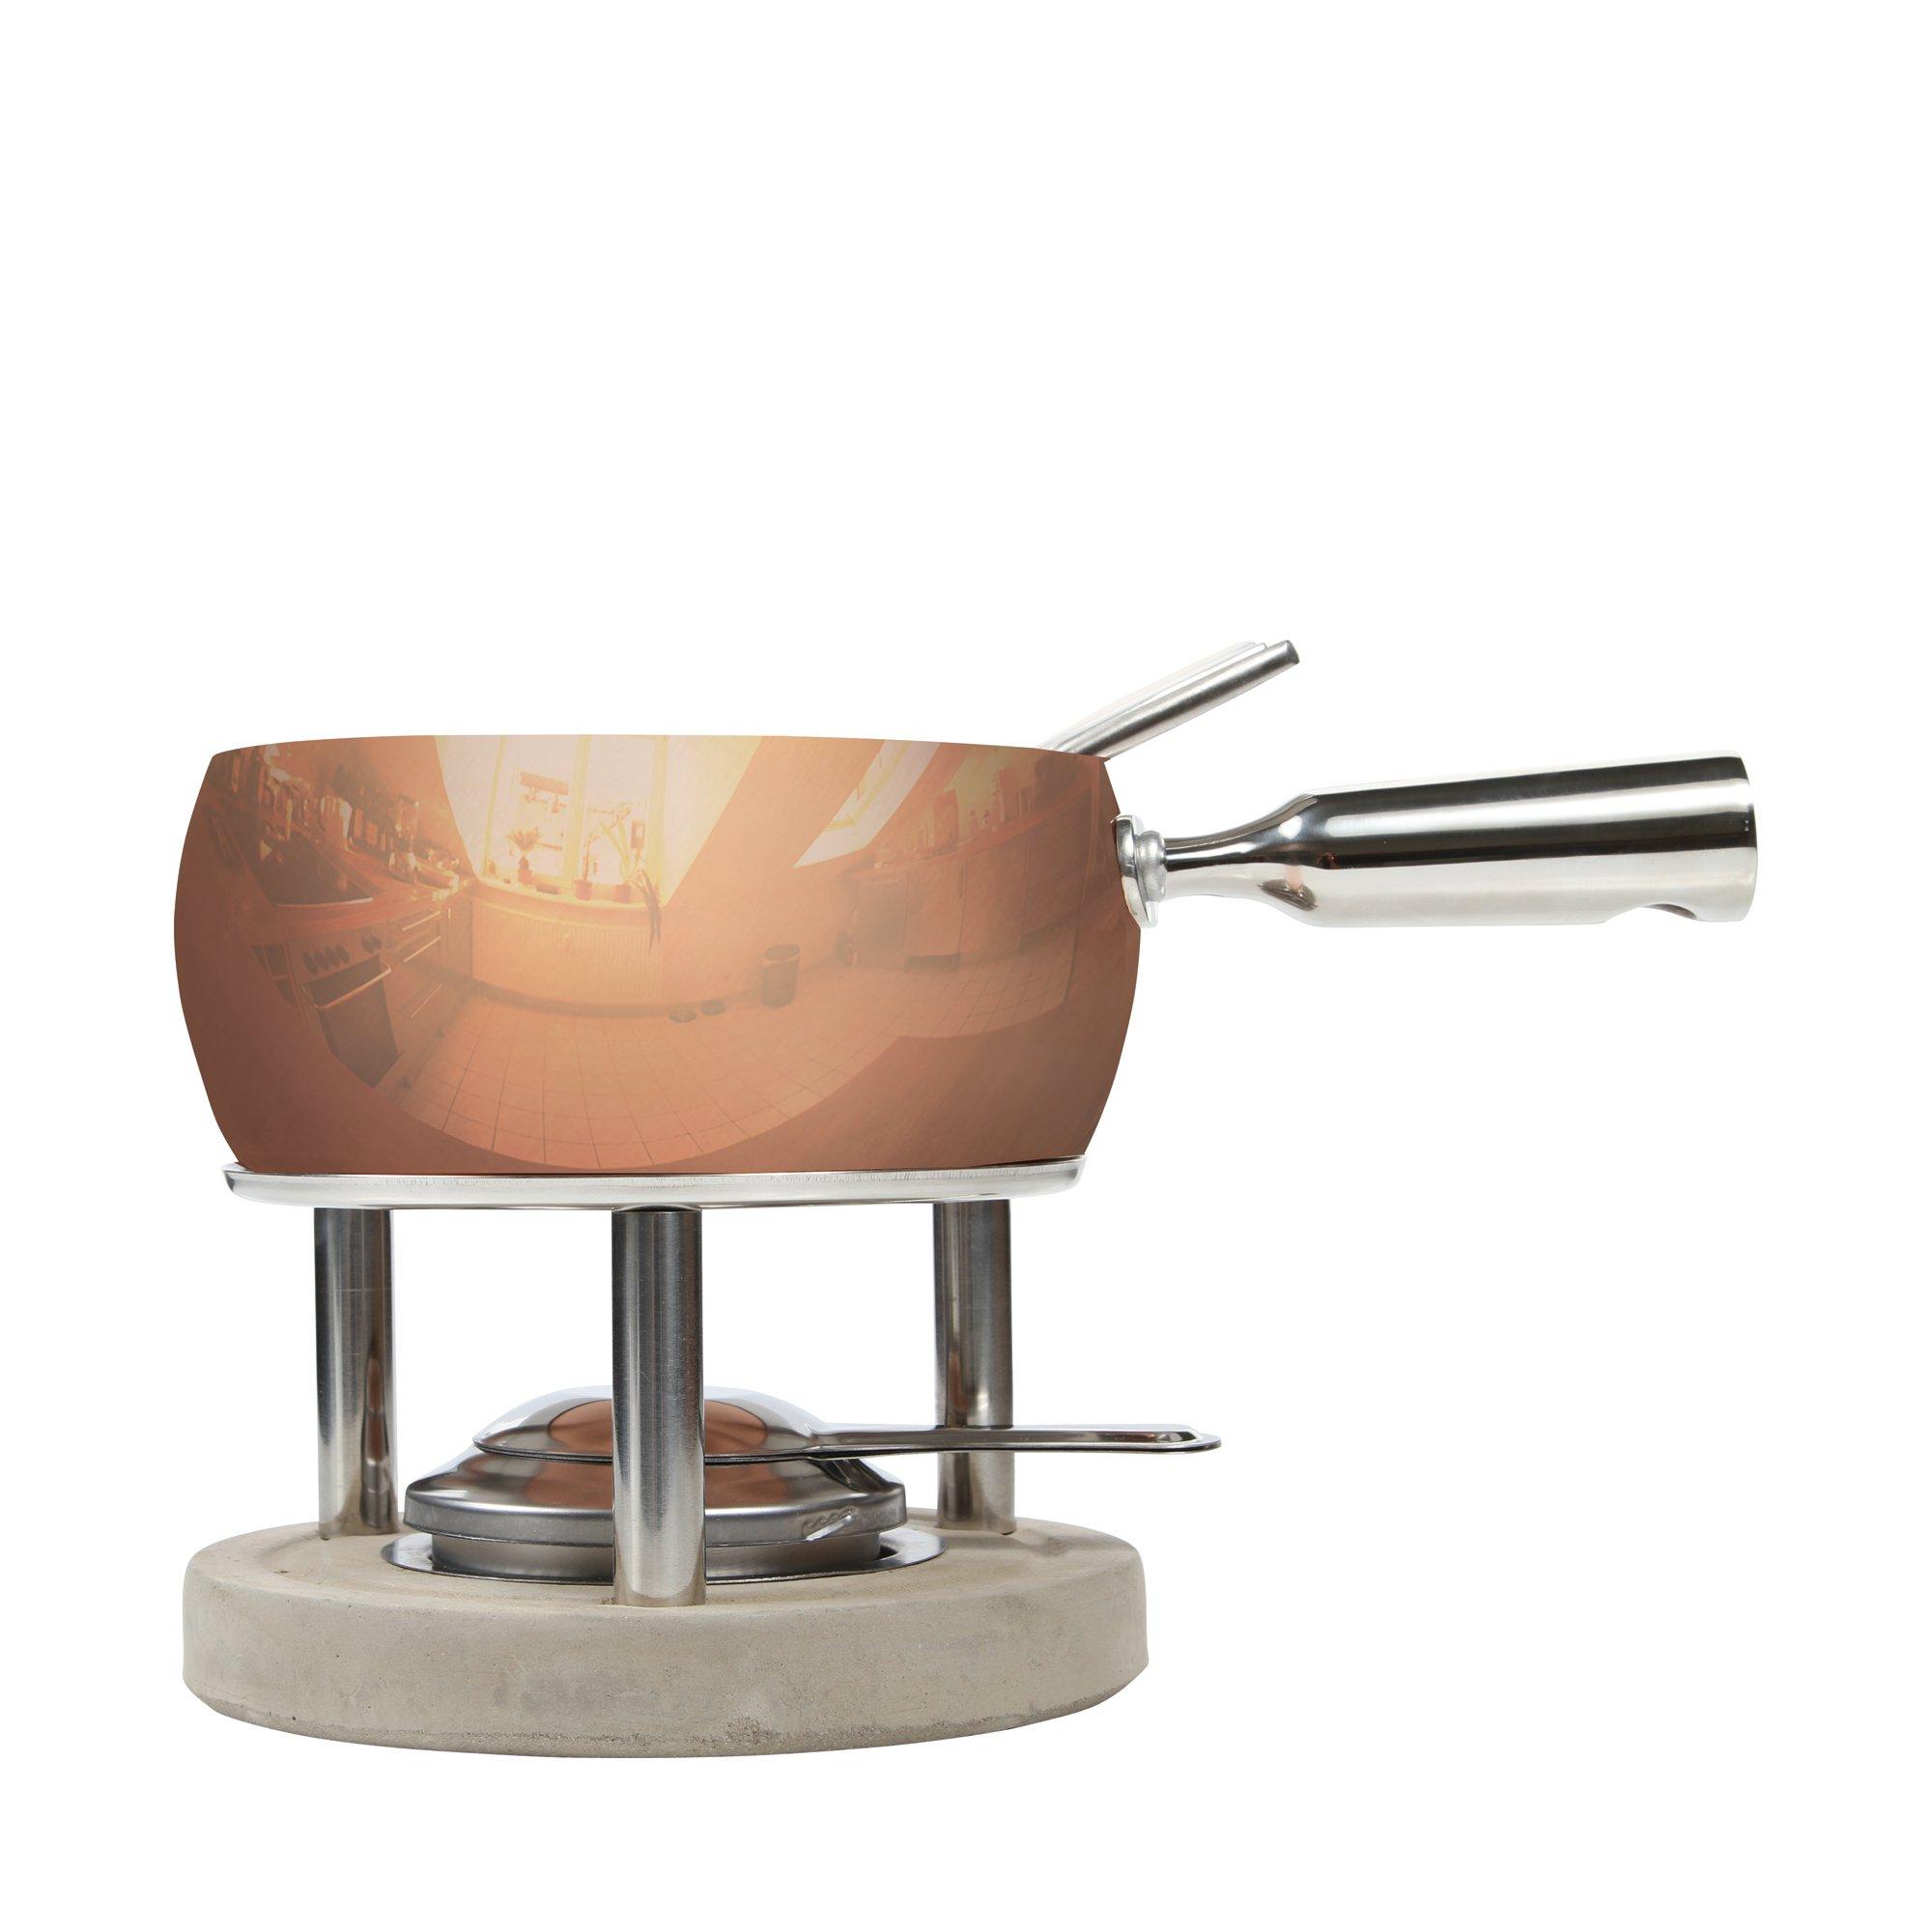 Image of BOSKA Käsefondue-Set Copper - 21cm